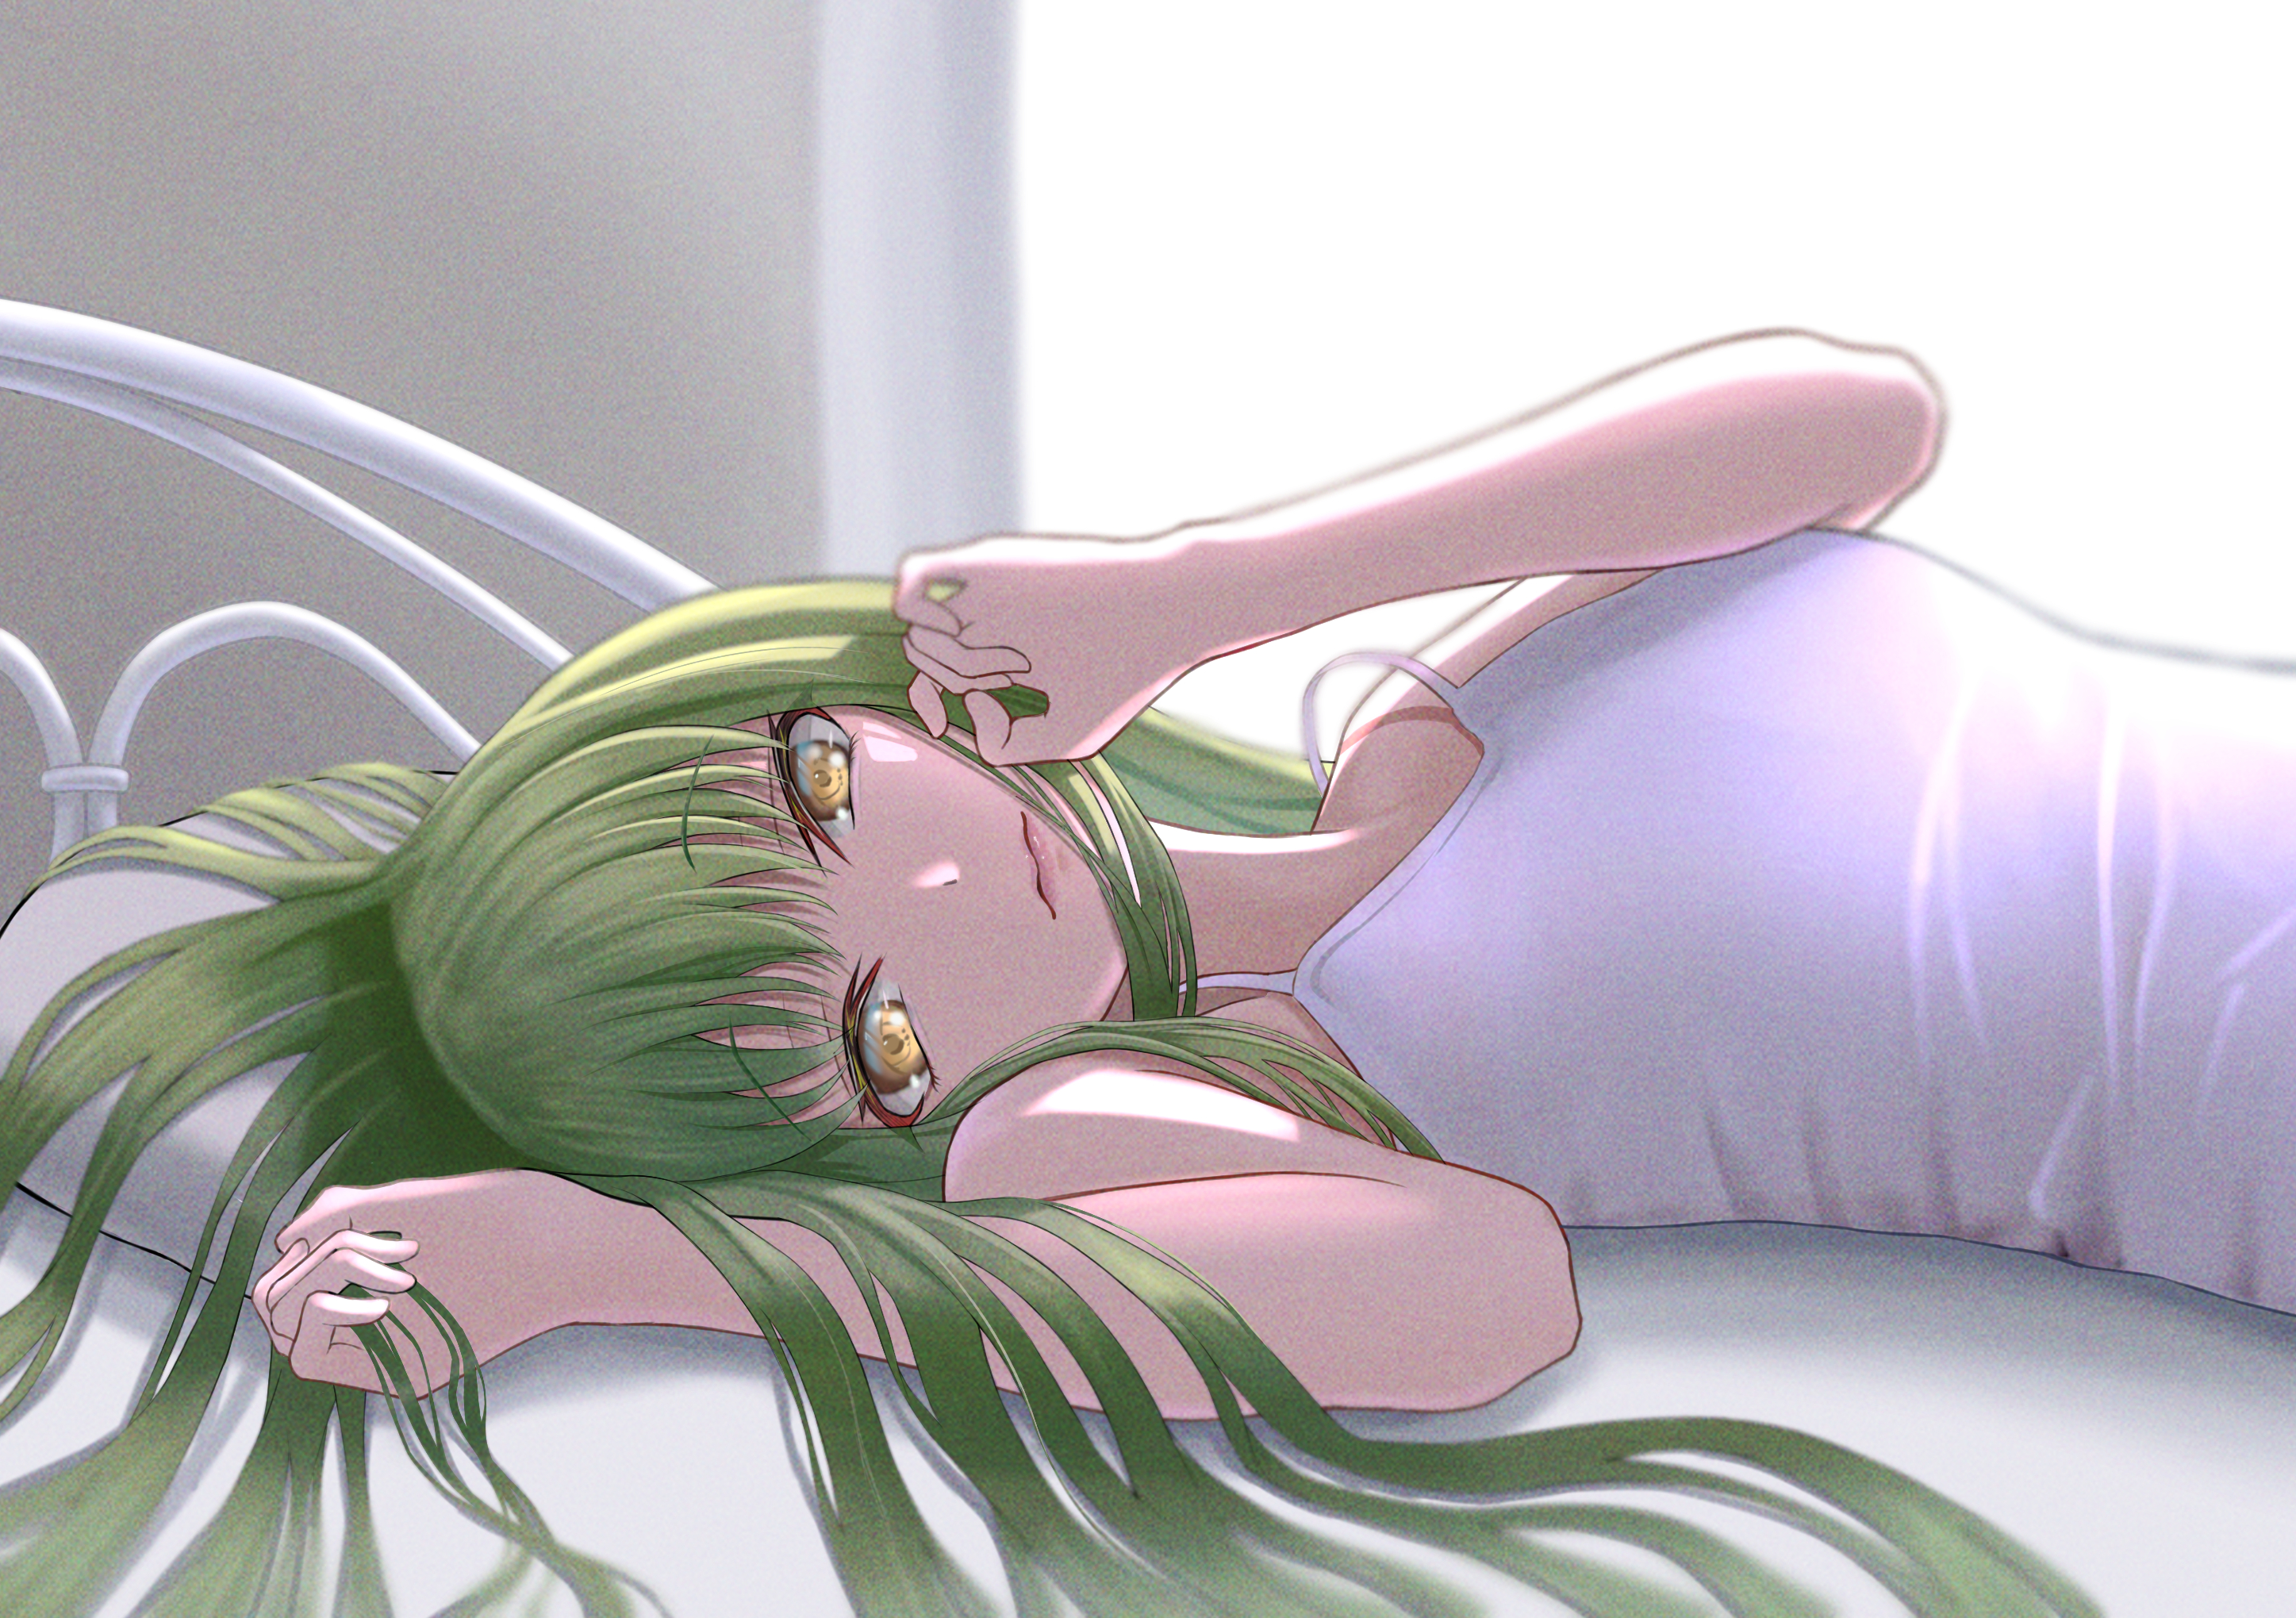 Anime 2894x2039 anime anime girls Code Geass C.C. (Code Geass) long hair green hair artwork digital art fan art